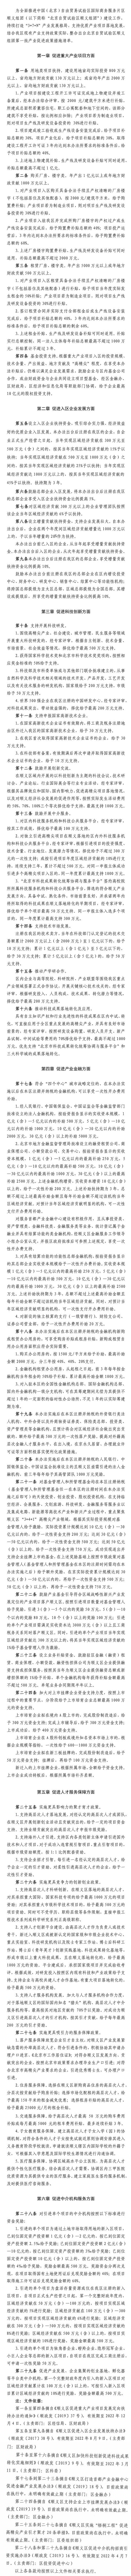 中国(北京)自由贸易试验区顺义组团产业促进政策措施(第一批清单).png